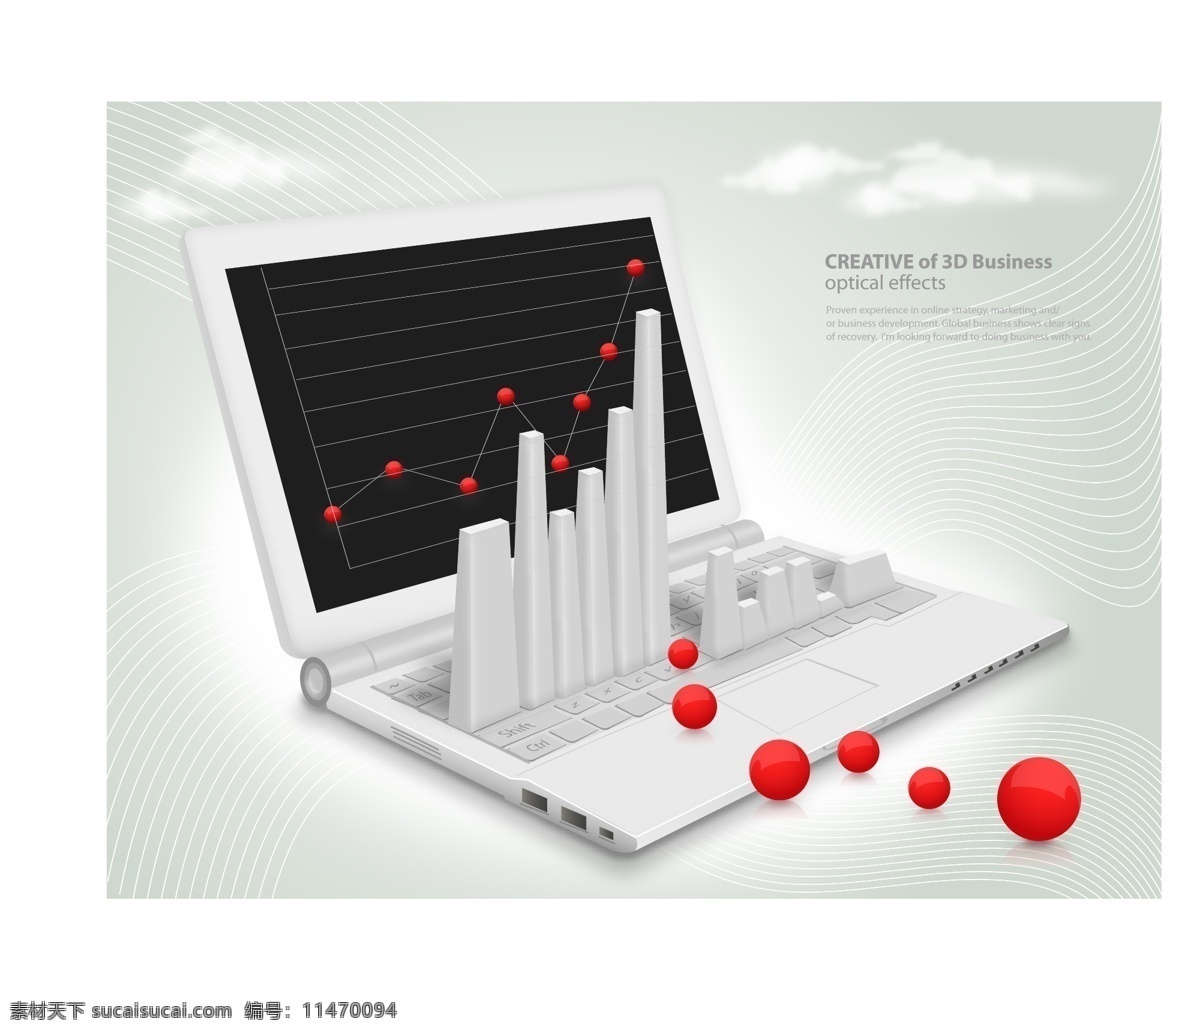 商务 笔记本 电脑 商务概念 手提电脑 红色小球 上升图线条 商务设计海报 矢量 其他矢量 现代商务 商务金融 矢量素材 白色